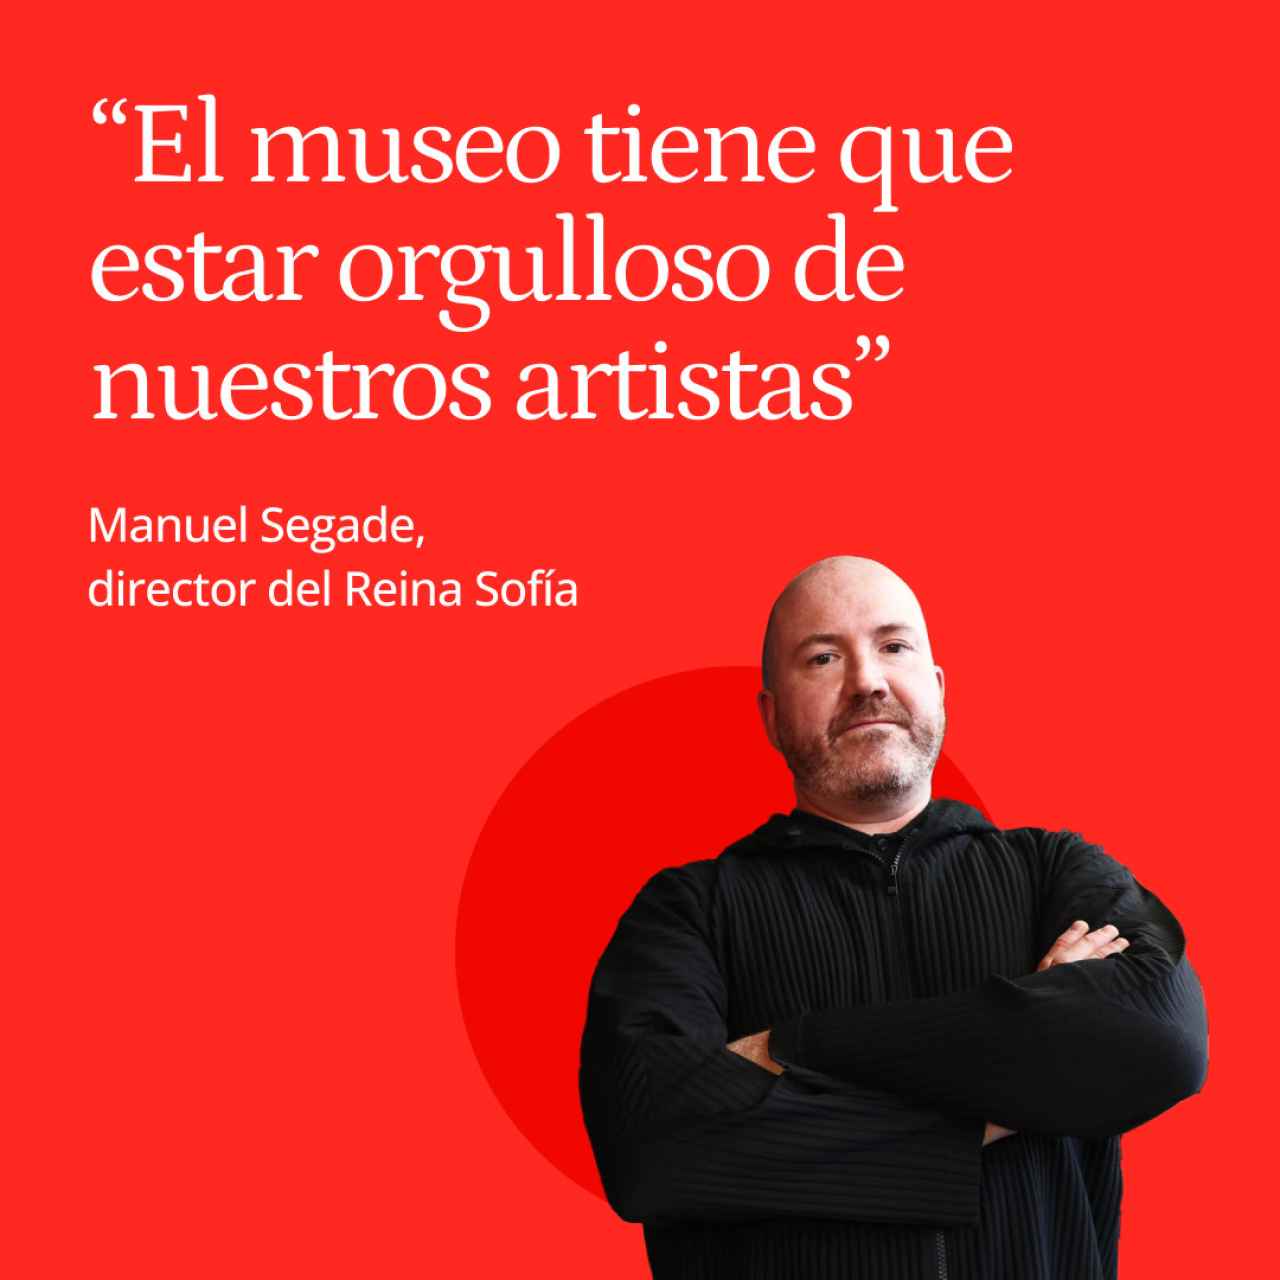 Manuel Segade, director del Reina Sofía: "El museo tiene que estar orgulloso de nuestros artistas"